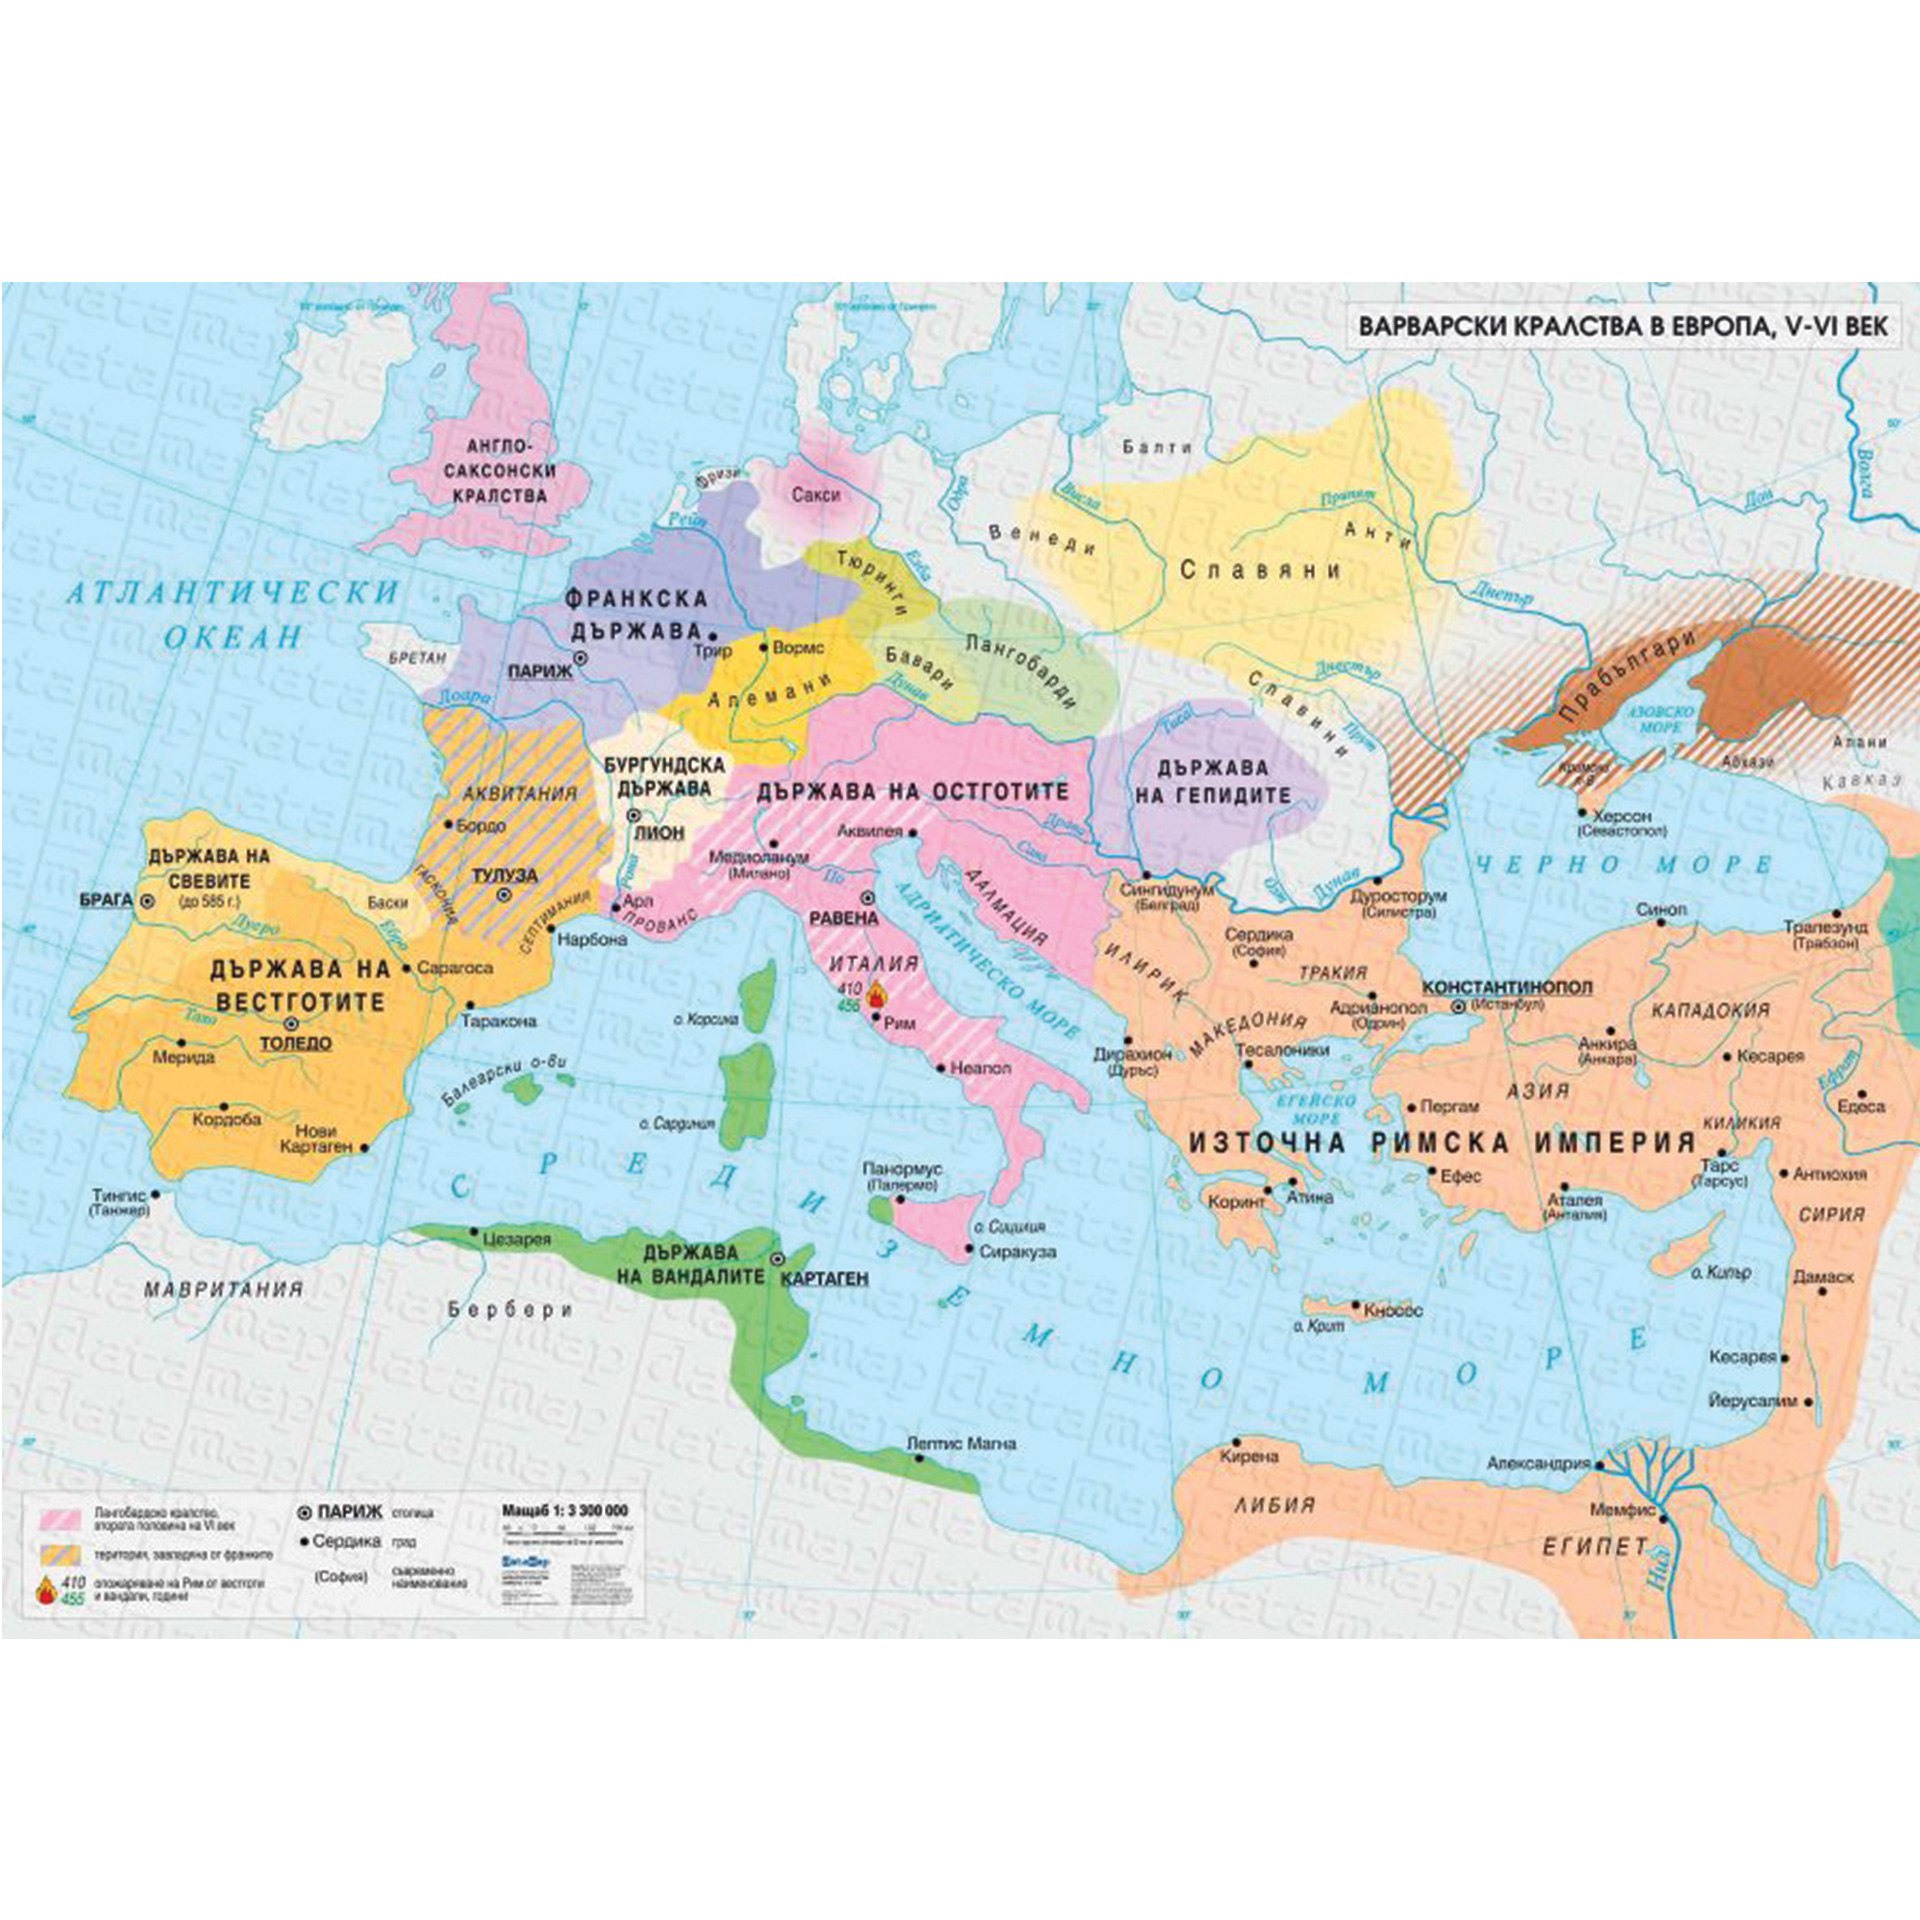 Мир в 1 веке нашей эры. Карта Европы 2 века до нашей эры. Карта Европы в 5 веке нашей эры. Племена Европы 6 век. Карта Европы 5 века нашей эры.